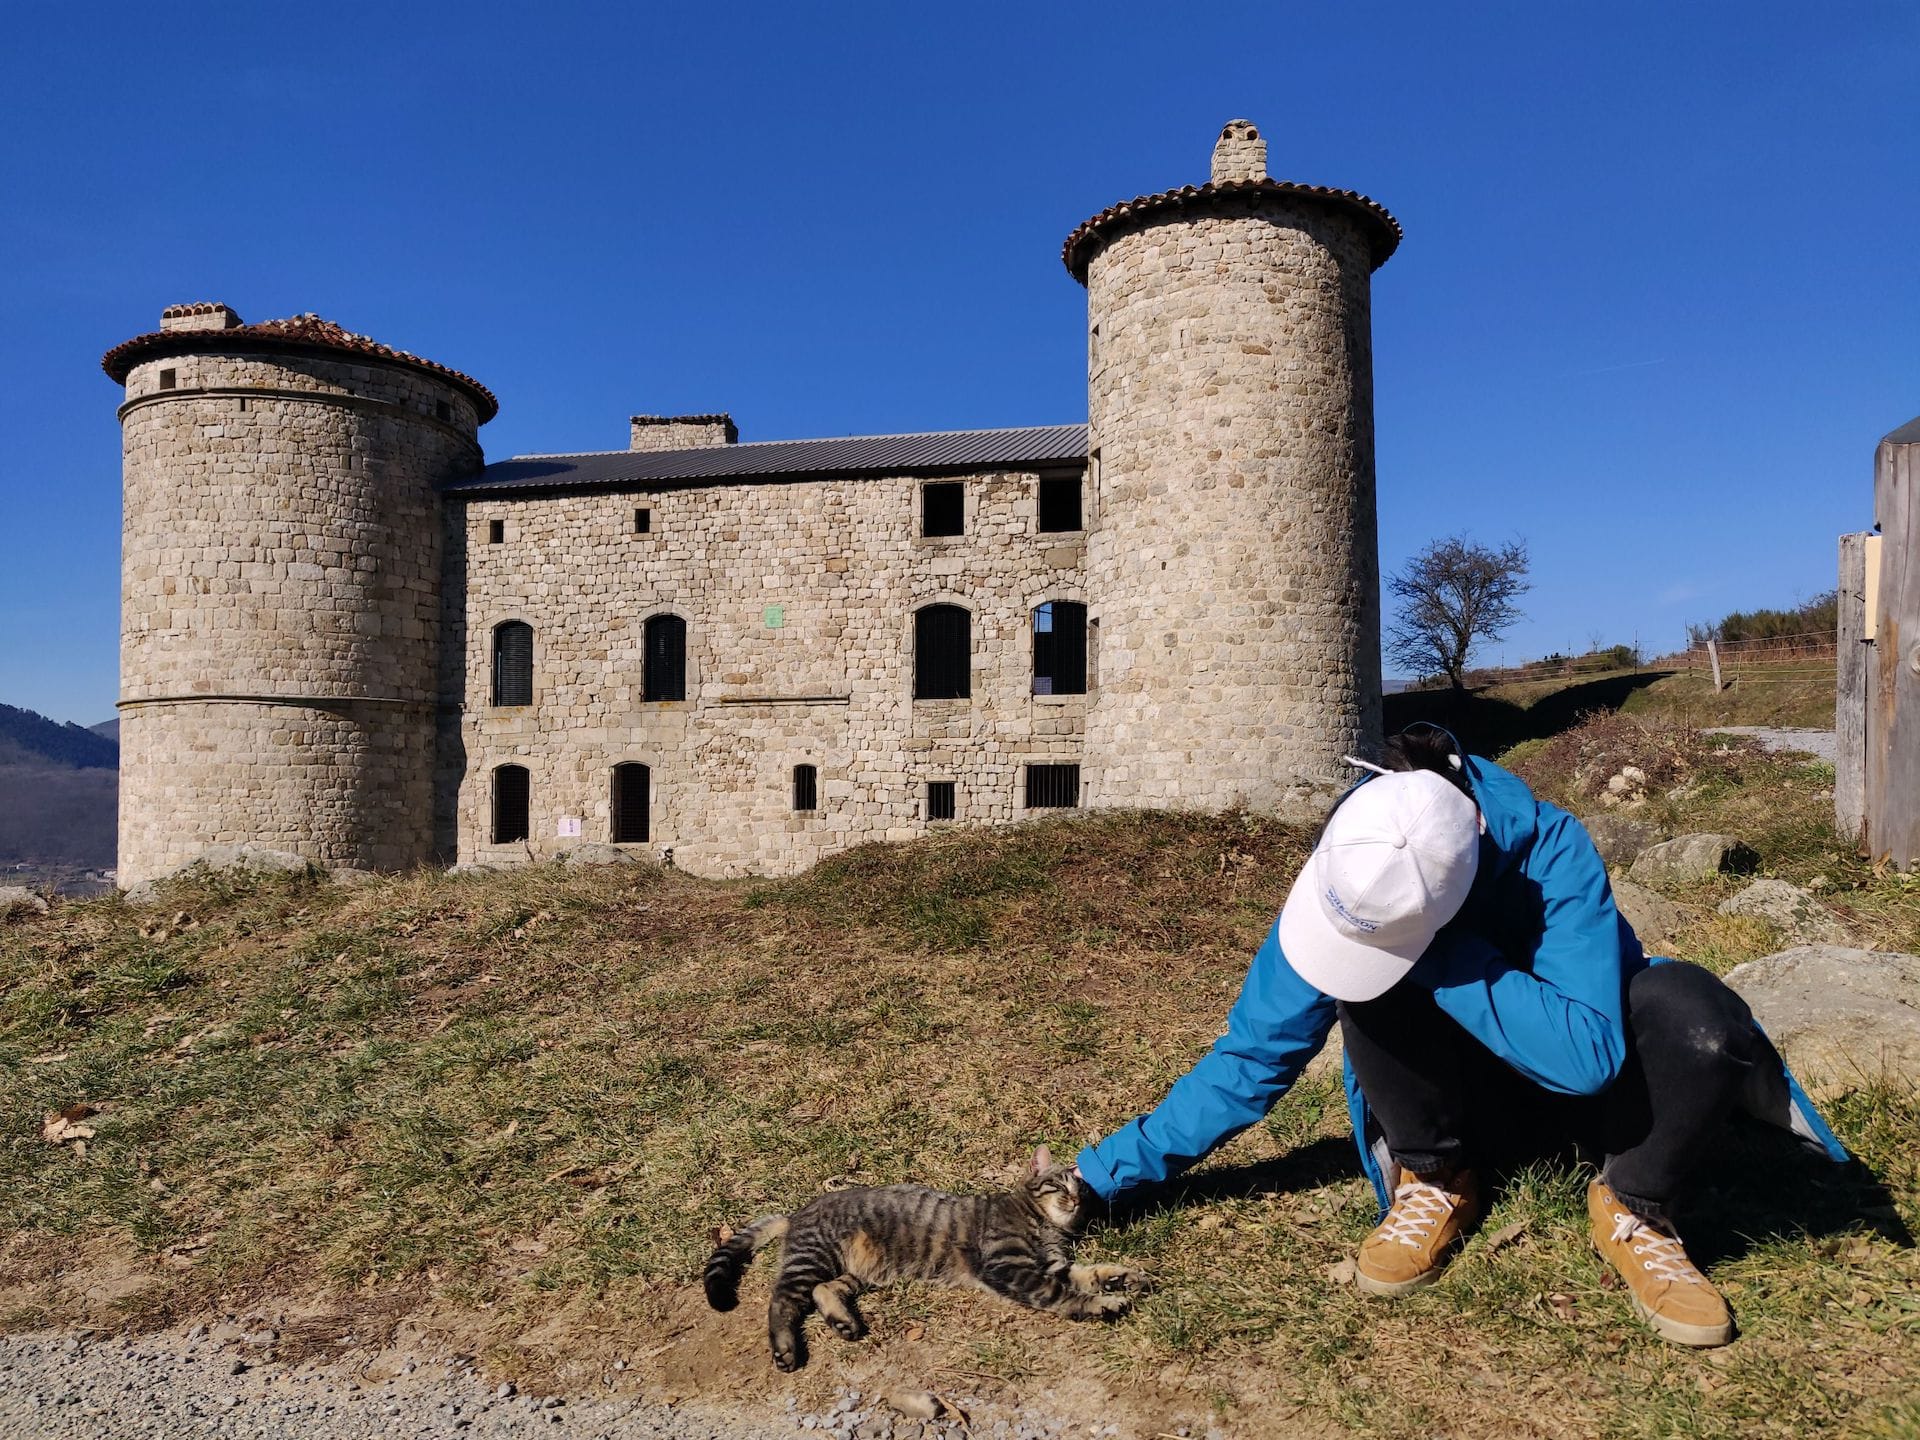 Clara caresse le même chat devant le château de Craux